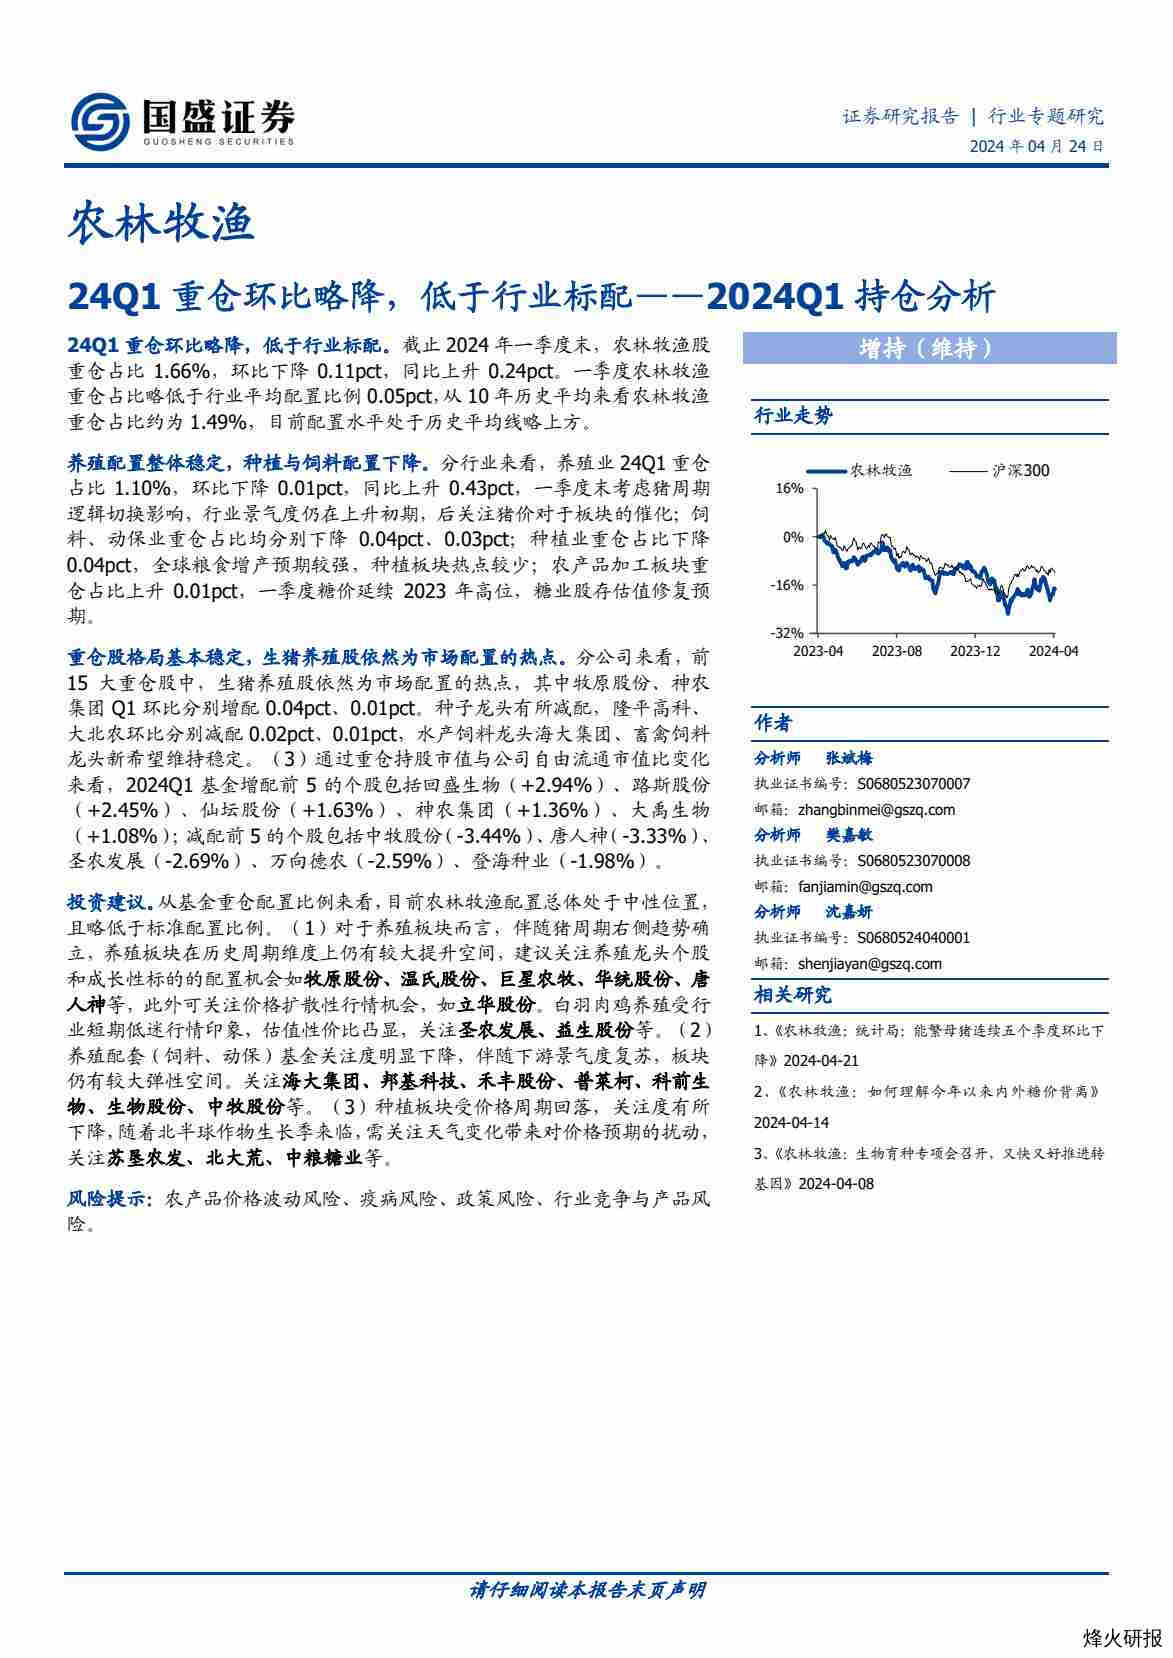 农林牧渔2024Q1持仓分析：24Q1重仓环比略降，低于行业标配-第一页